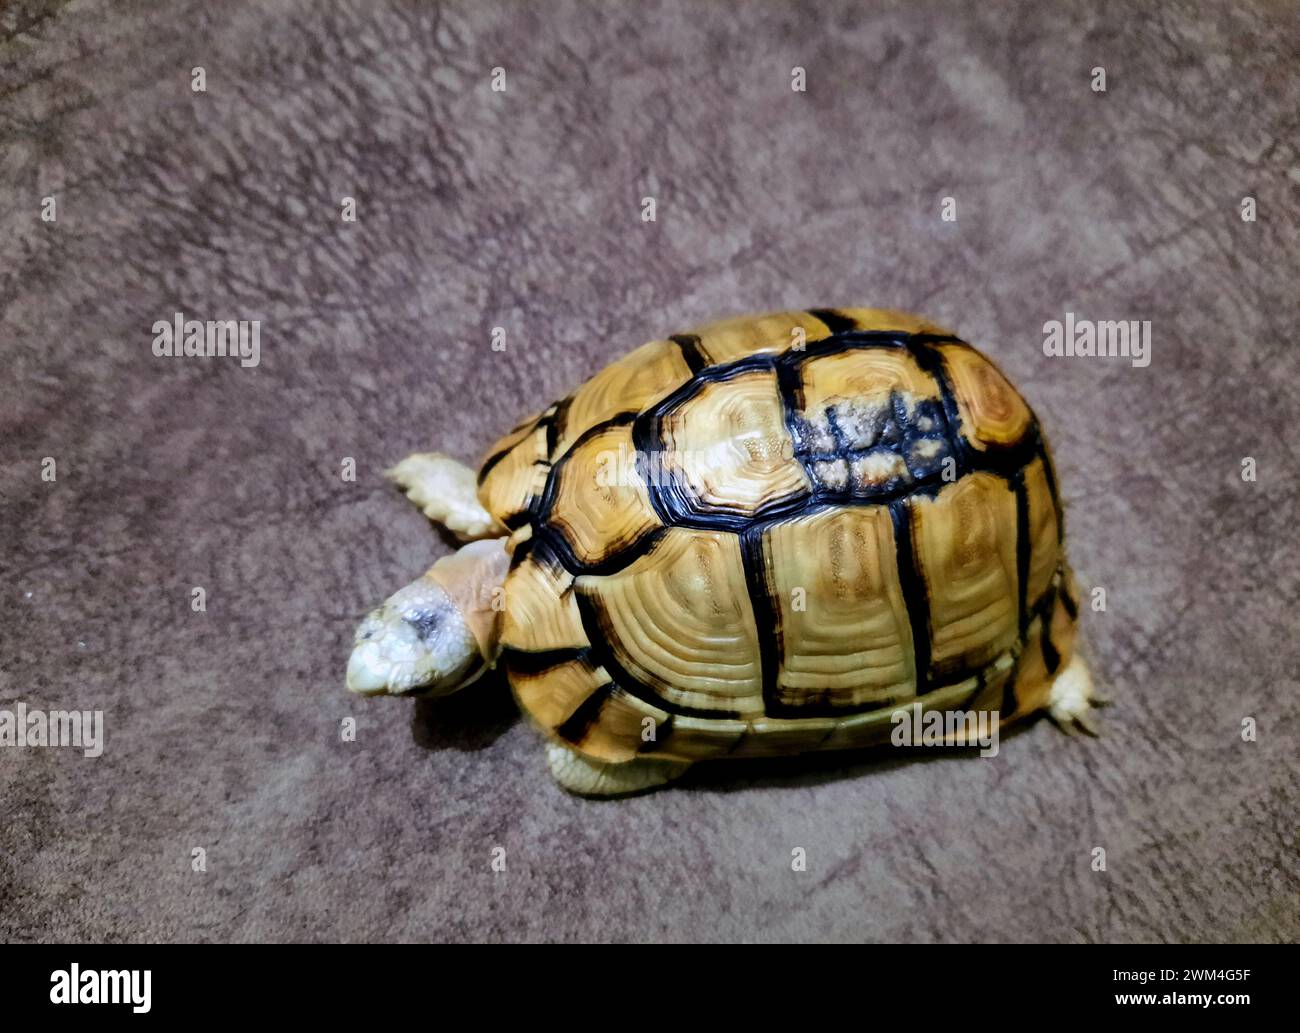 Una piccola tartaruga con una parte rotta guarita del suo guscio, il guscio della tartaruga è osso, e come qualsiasi altro osso rotto, un guscio precedentemente incrinato, Foto Stock